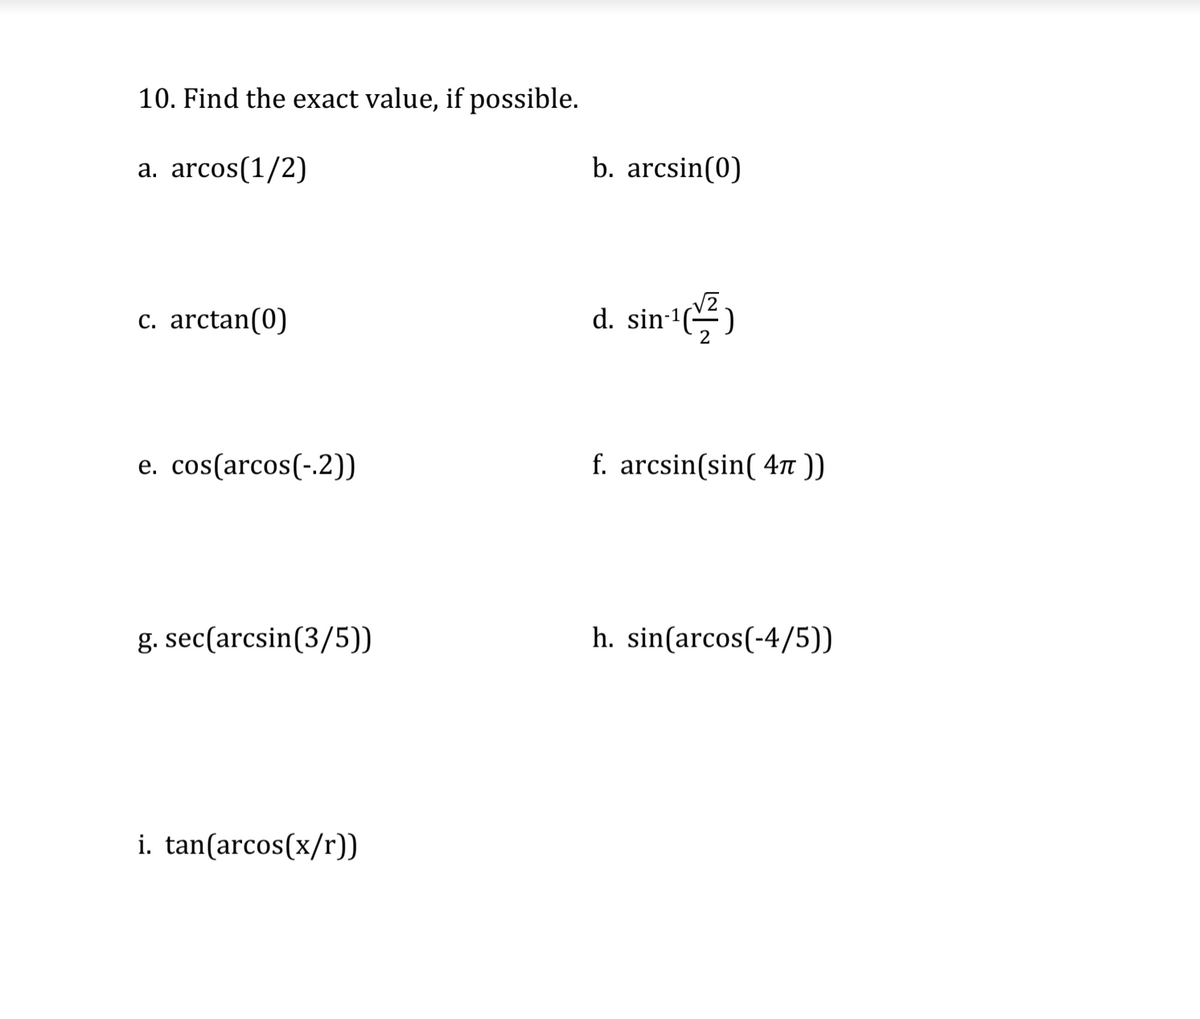 10. Find the exact value, if possible.
a. arcos(1/2)
b. arcsin(0)
c. arctan(0)
d. sin-1)
e. cos(arcos(-.2))
f. arcsin(sin( 4n ))
g. sec(arcsin(3/5))
h. sin(arcos(-4/5))
i. tan(arcos(x/r))
